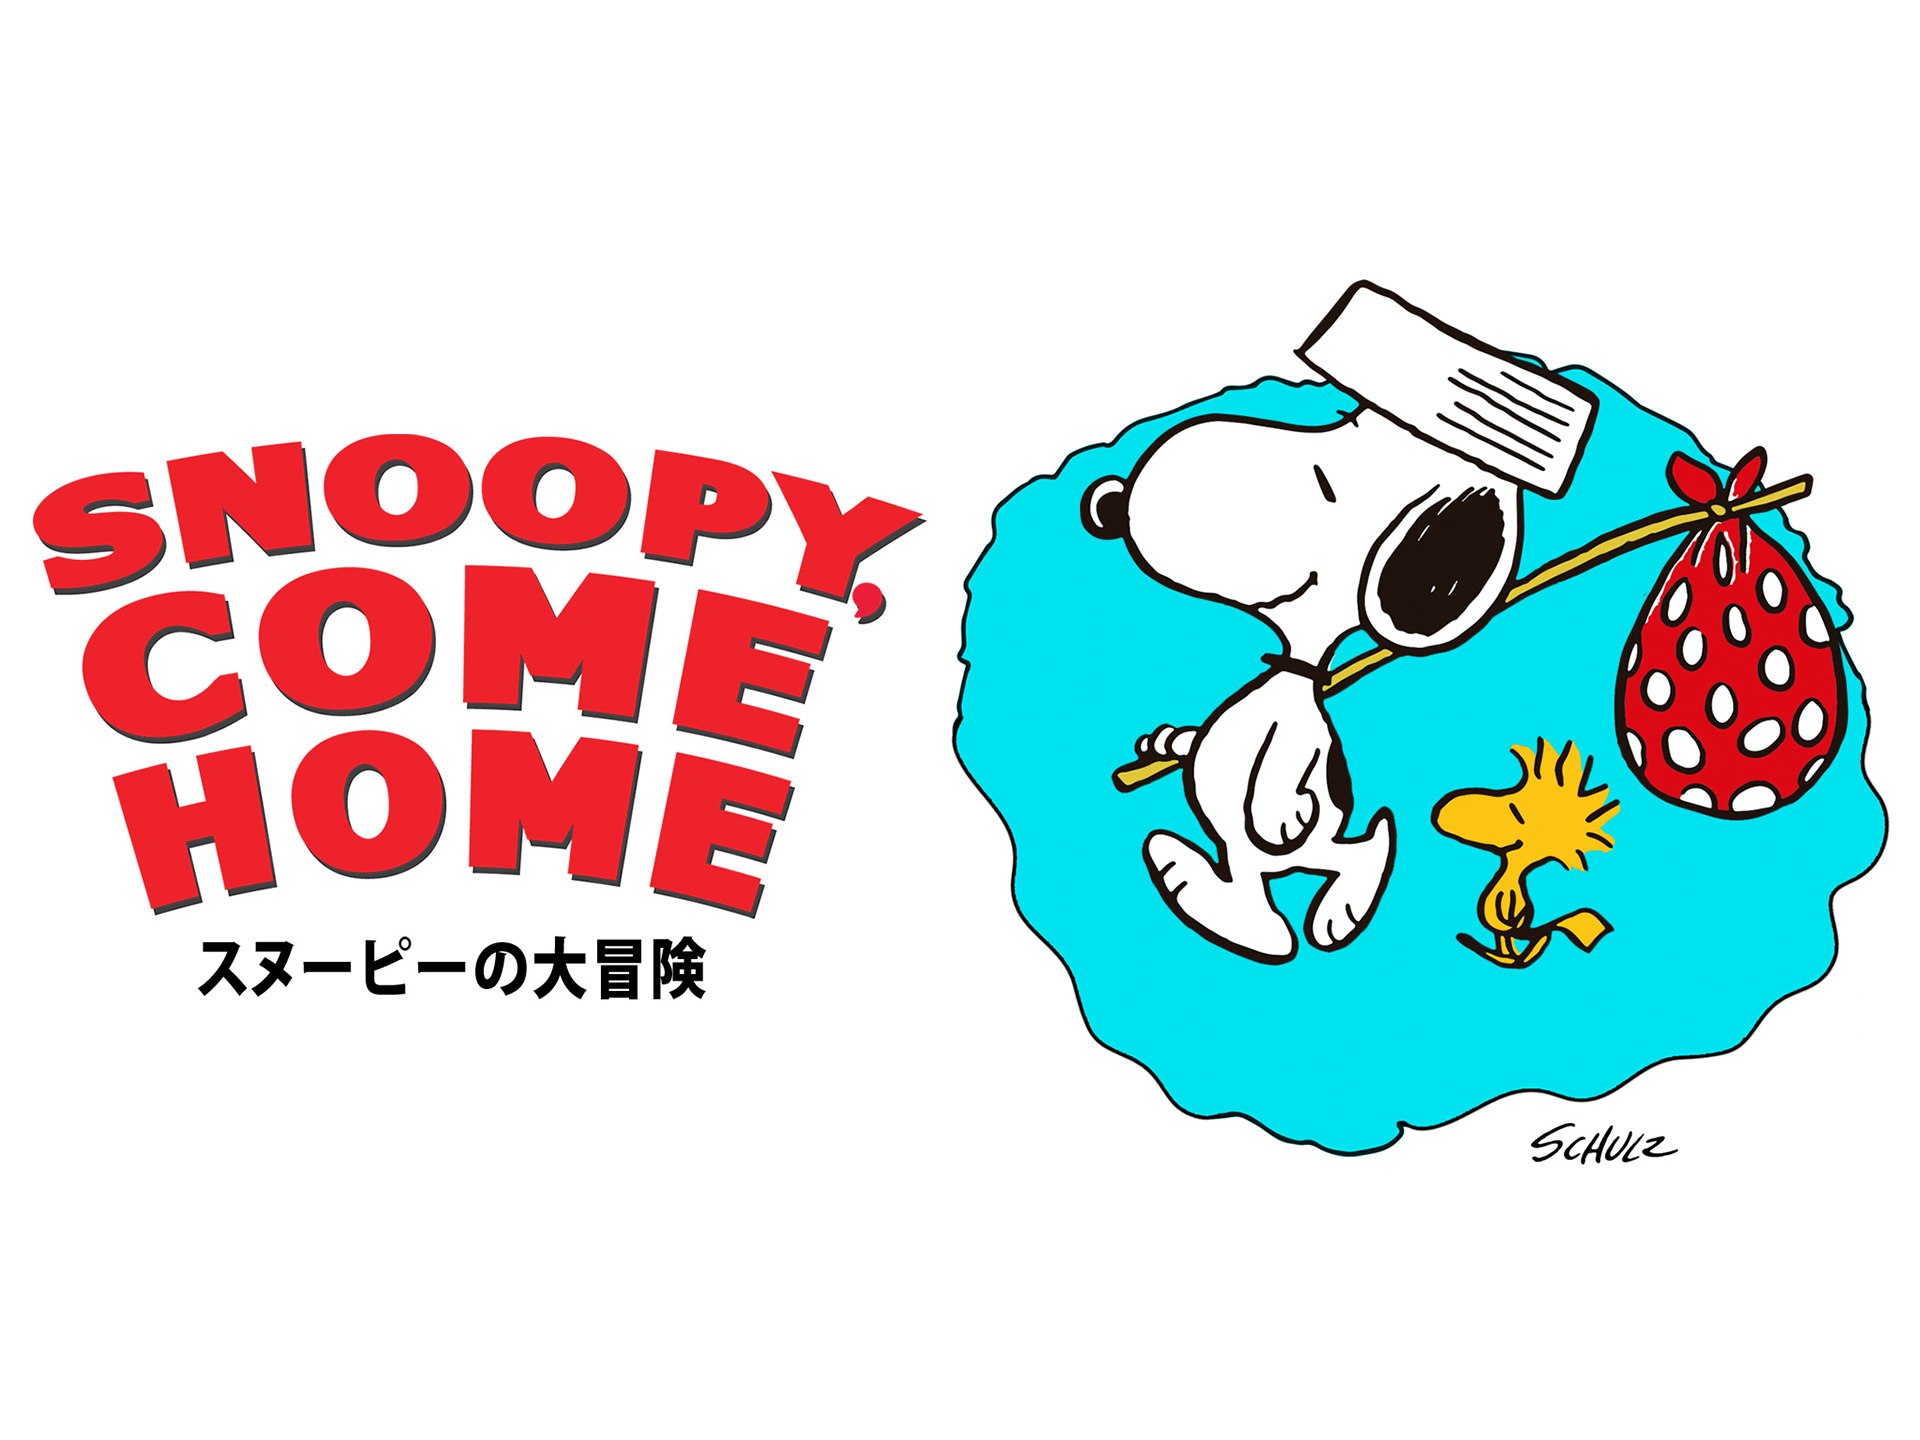 アニメ スヌーピーの大冒険 の動画 初月無料 動画配信サービスのビデオマーケット